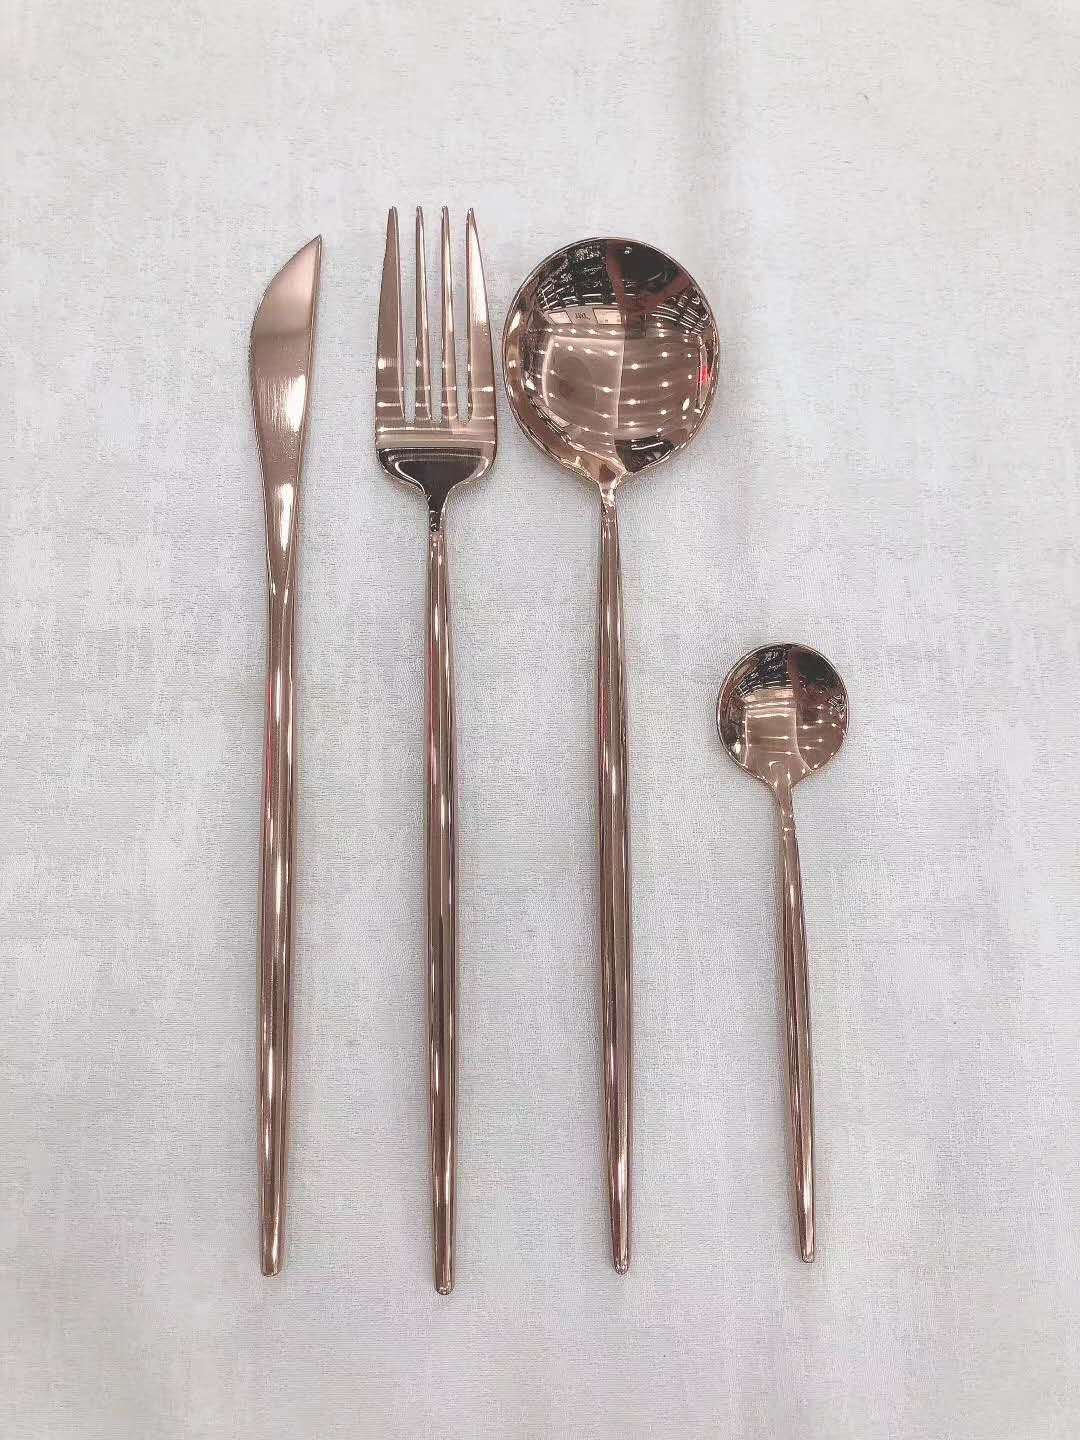 牛排刀叉勺304不锈钢小蛮腰欧式玫瑰金汤勺甜品叉勺西餐餐具4件套